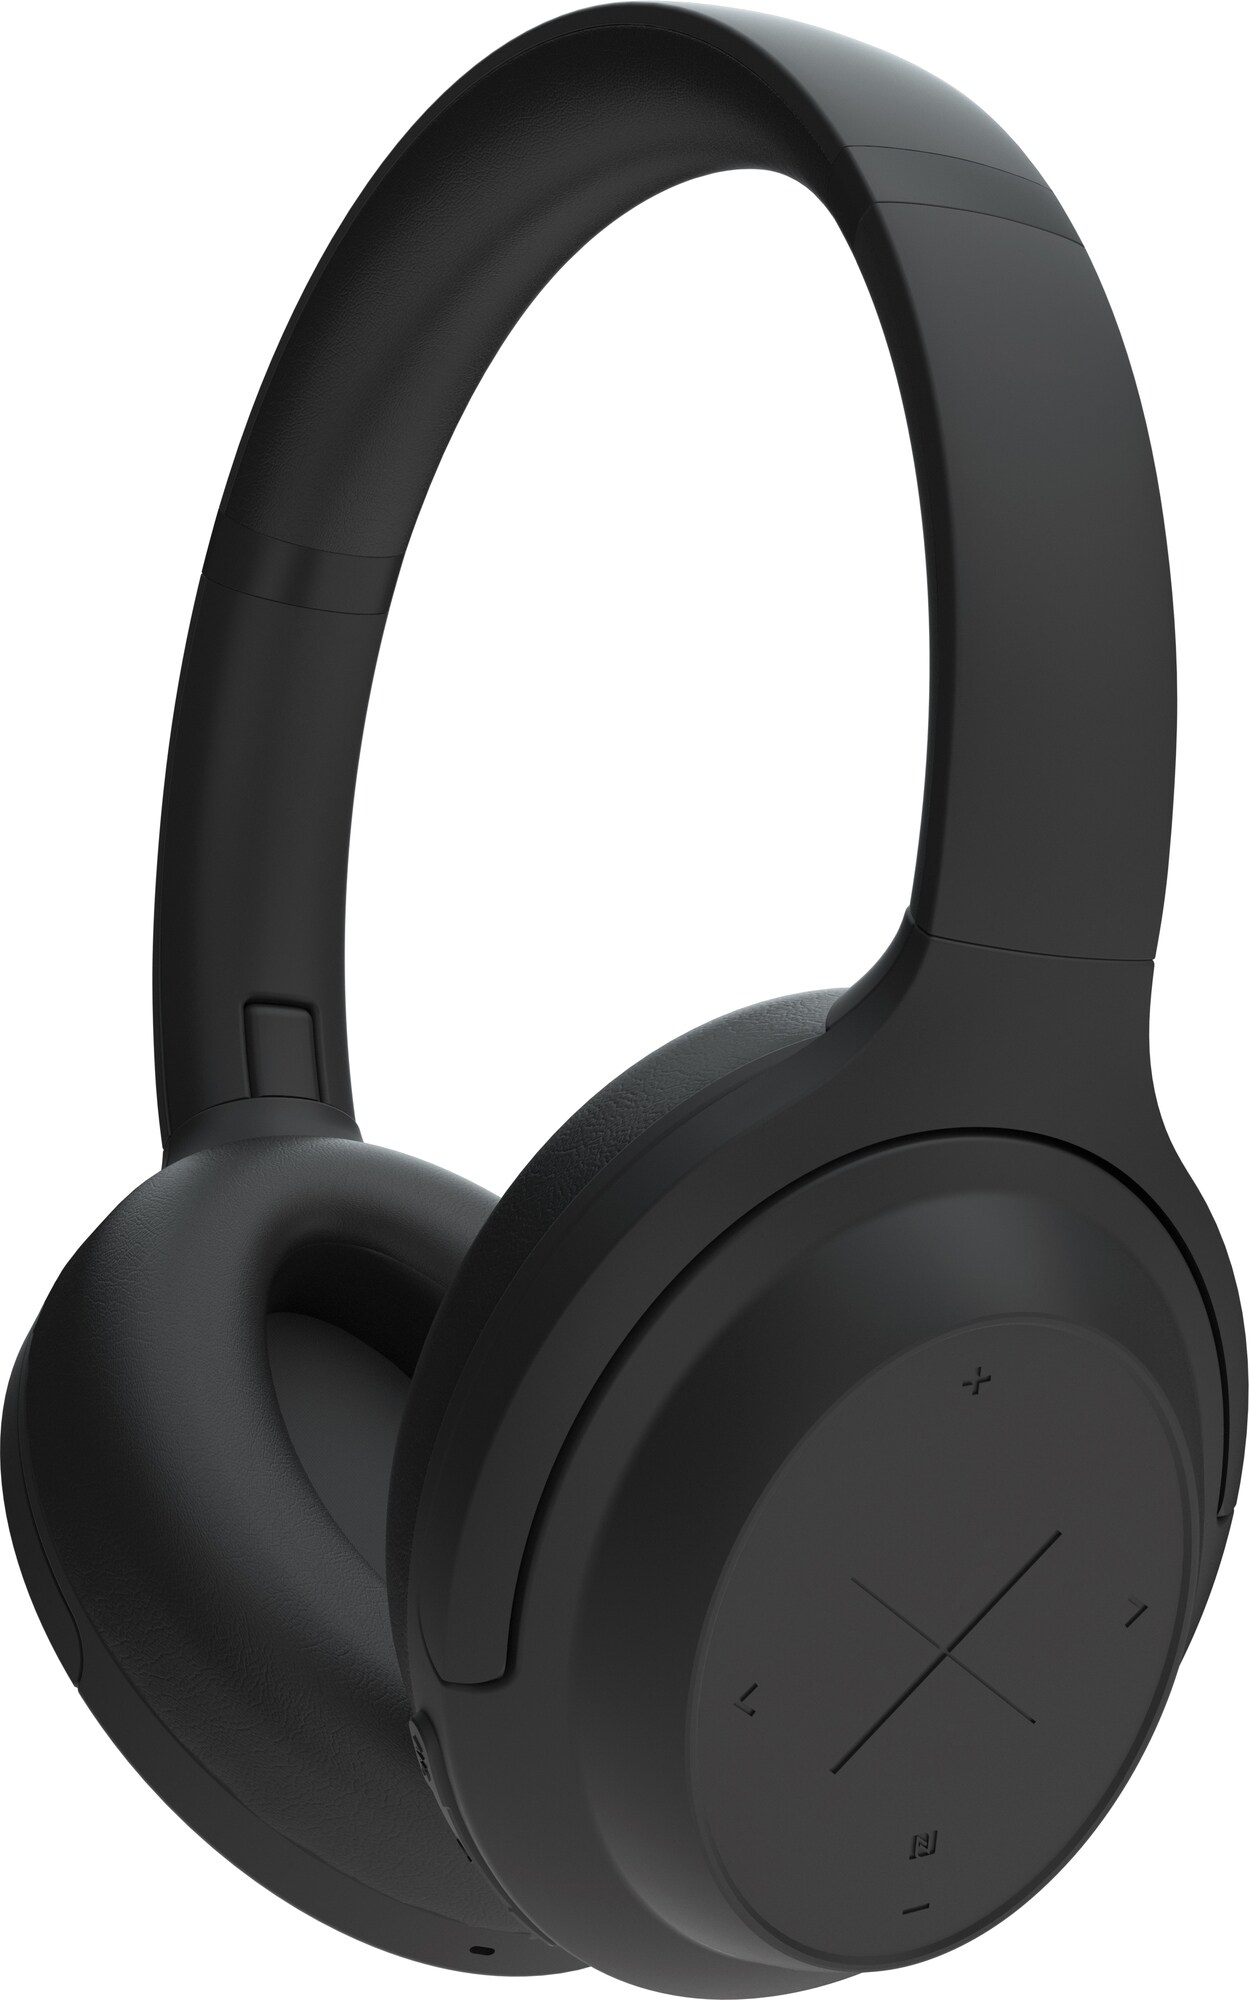 Kygo A11/800 trådløse around-ear hodetelefoner (sort) - Elkjøp